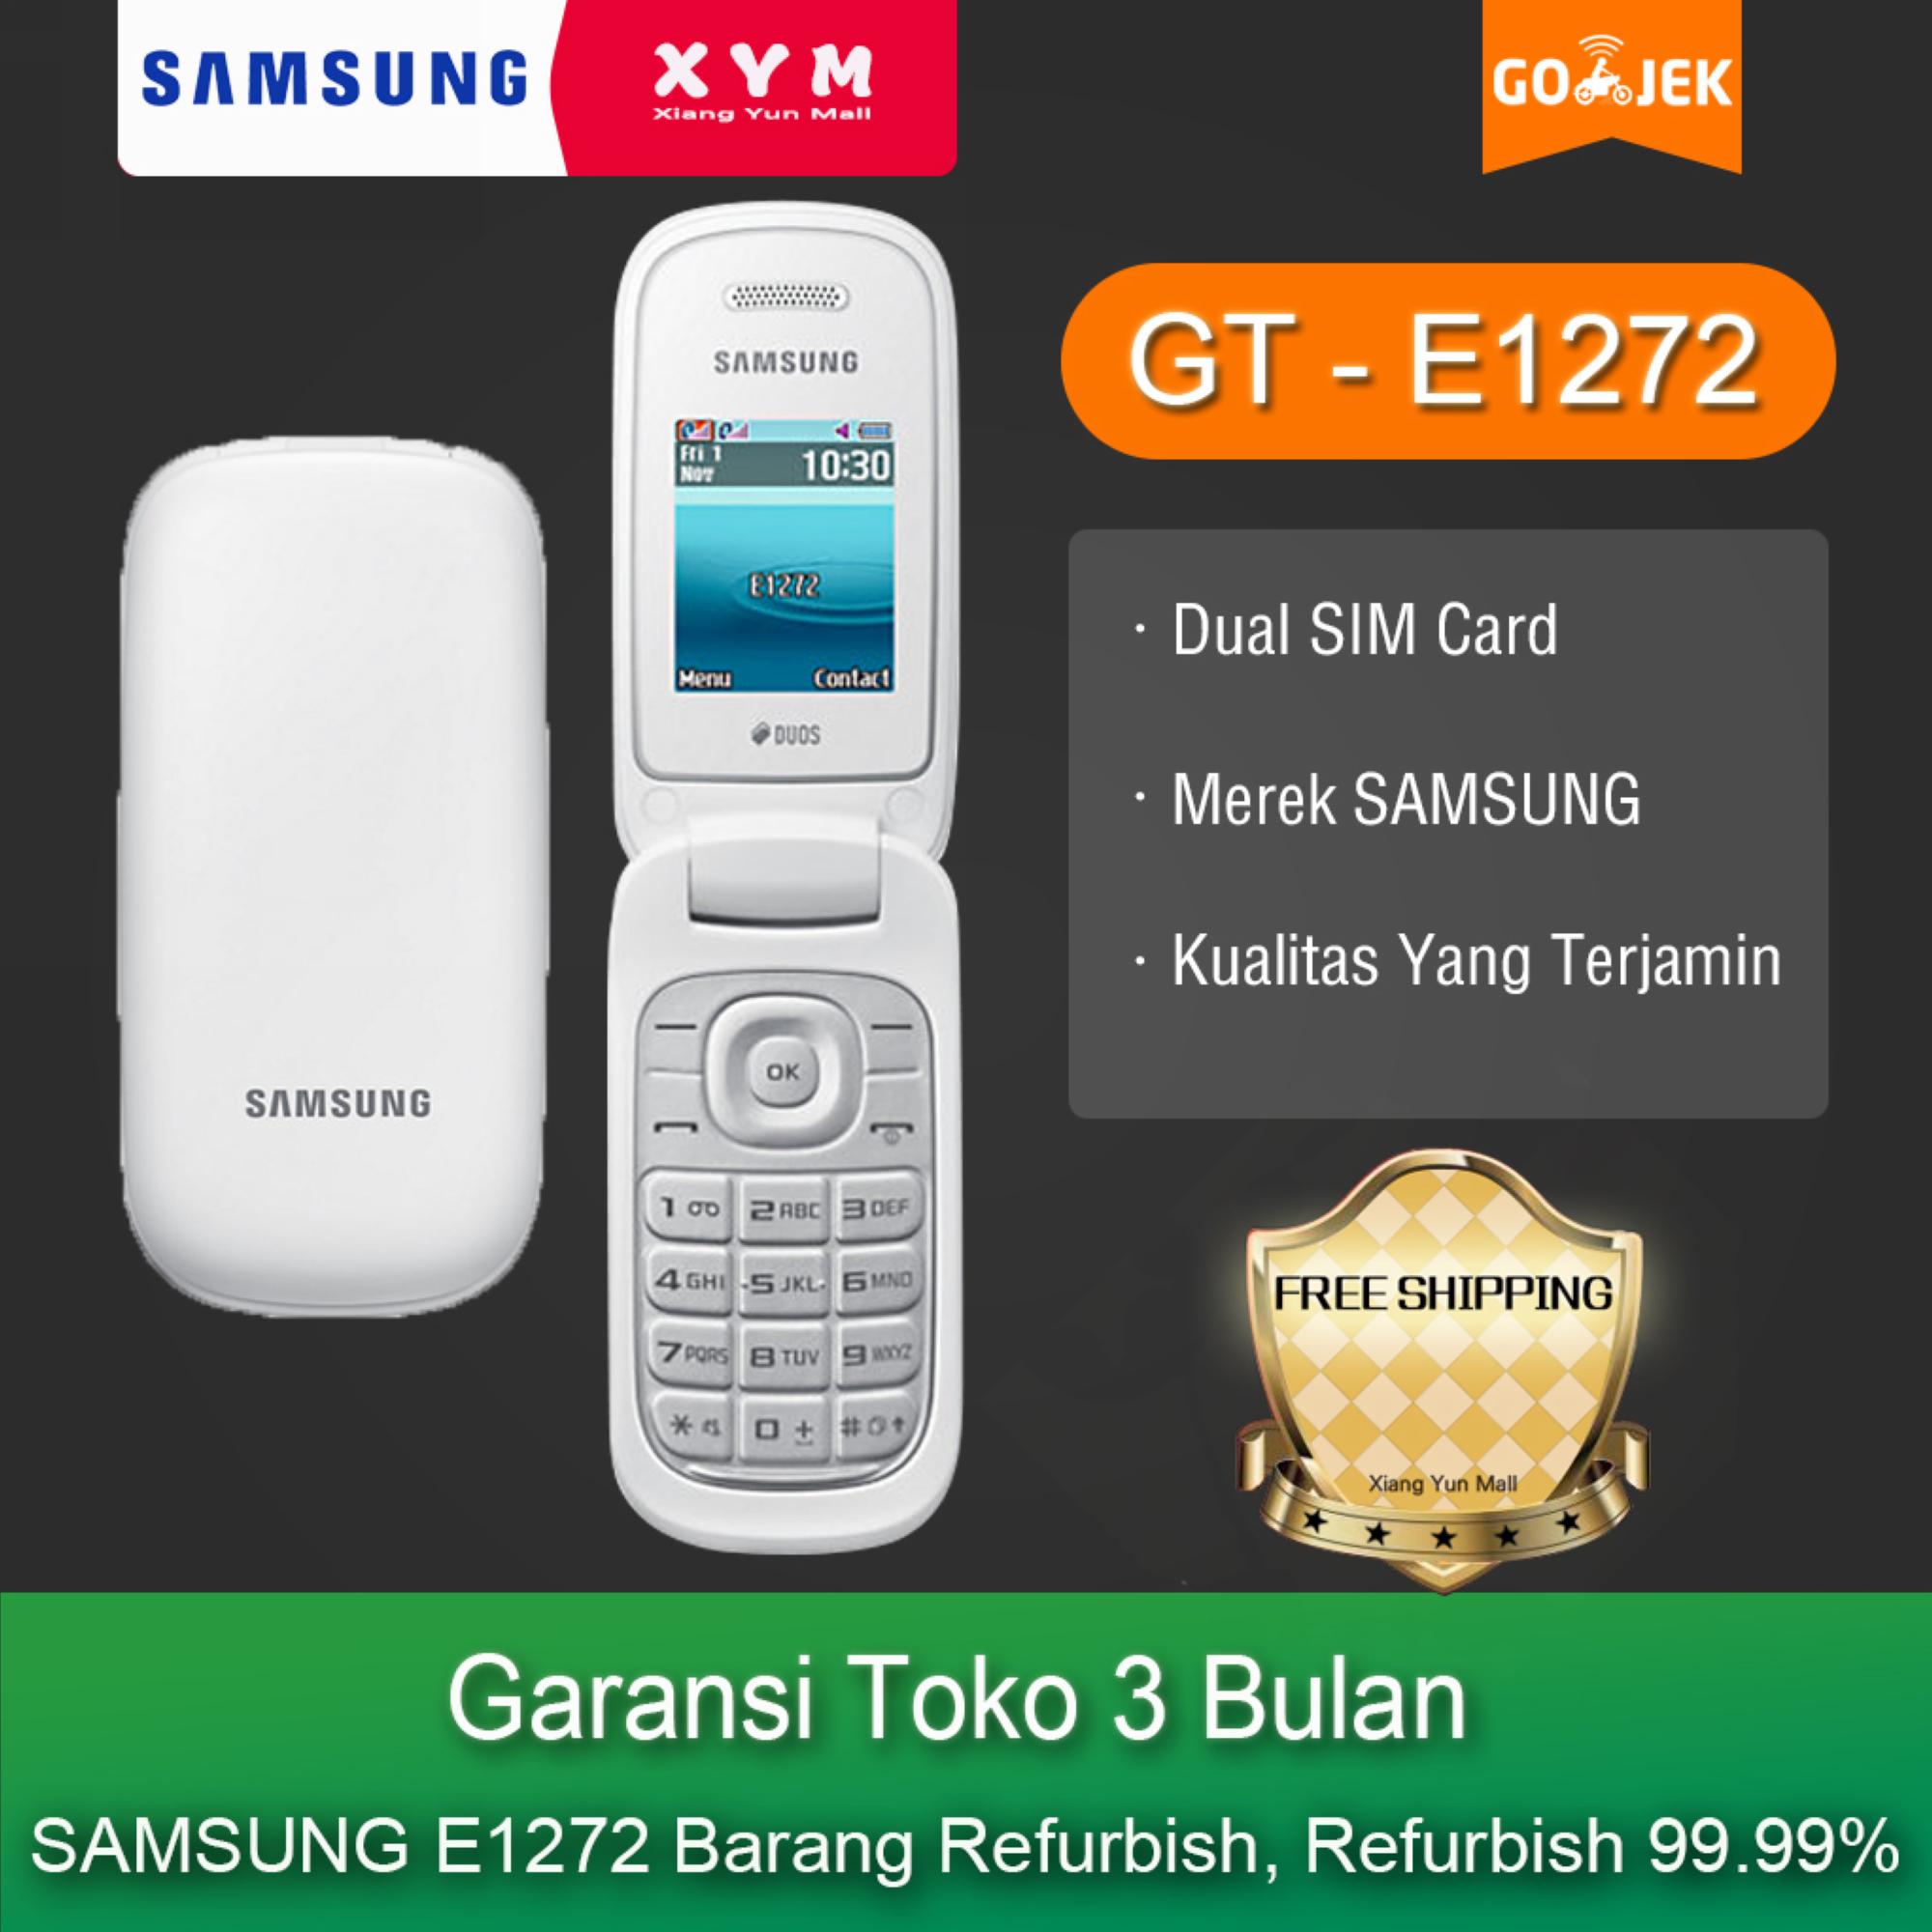 SAMSUNG E1272 - Garansi Toko 3 Bulan Samsumg Kualitas Yang Terjamin  Dual SIM Card Merek (Refurbish) 